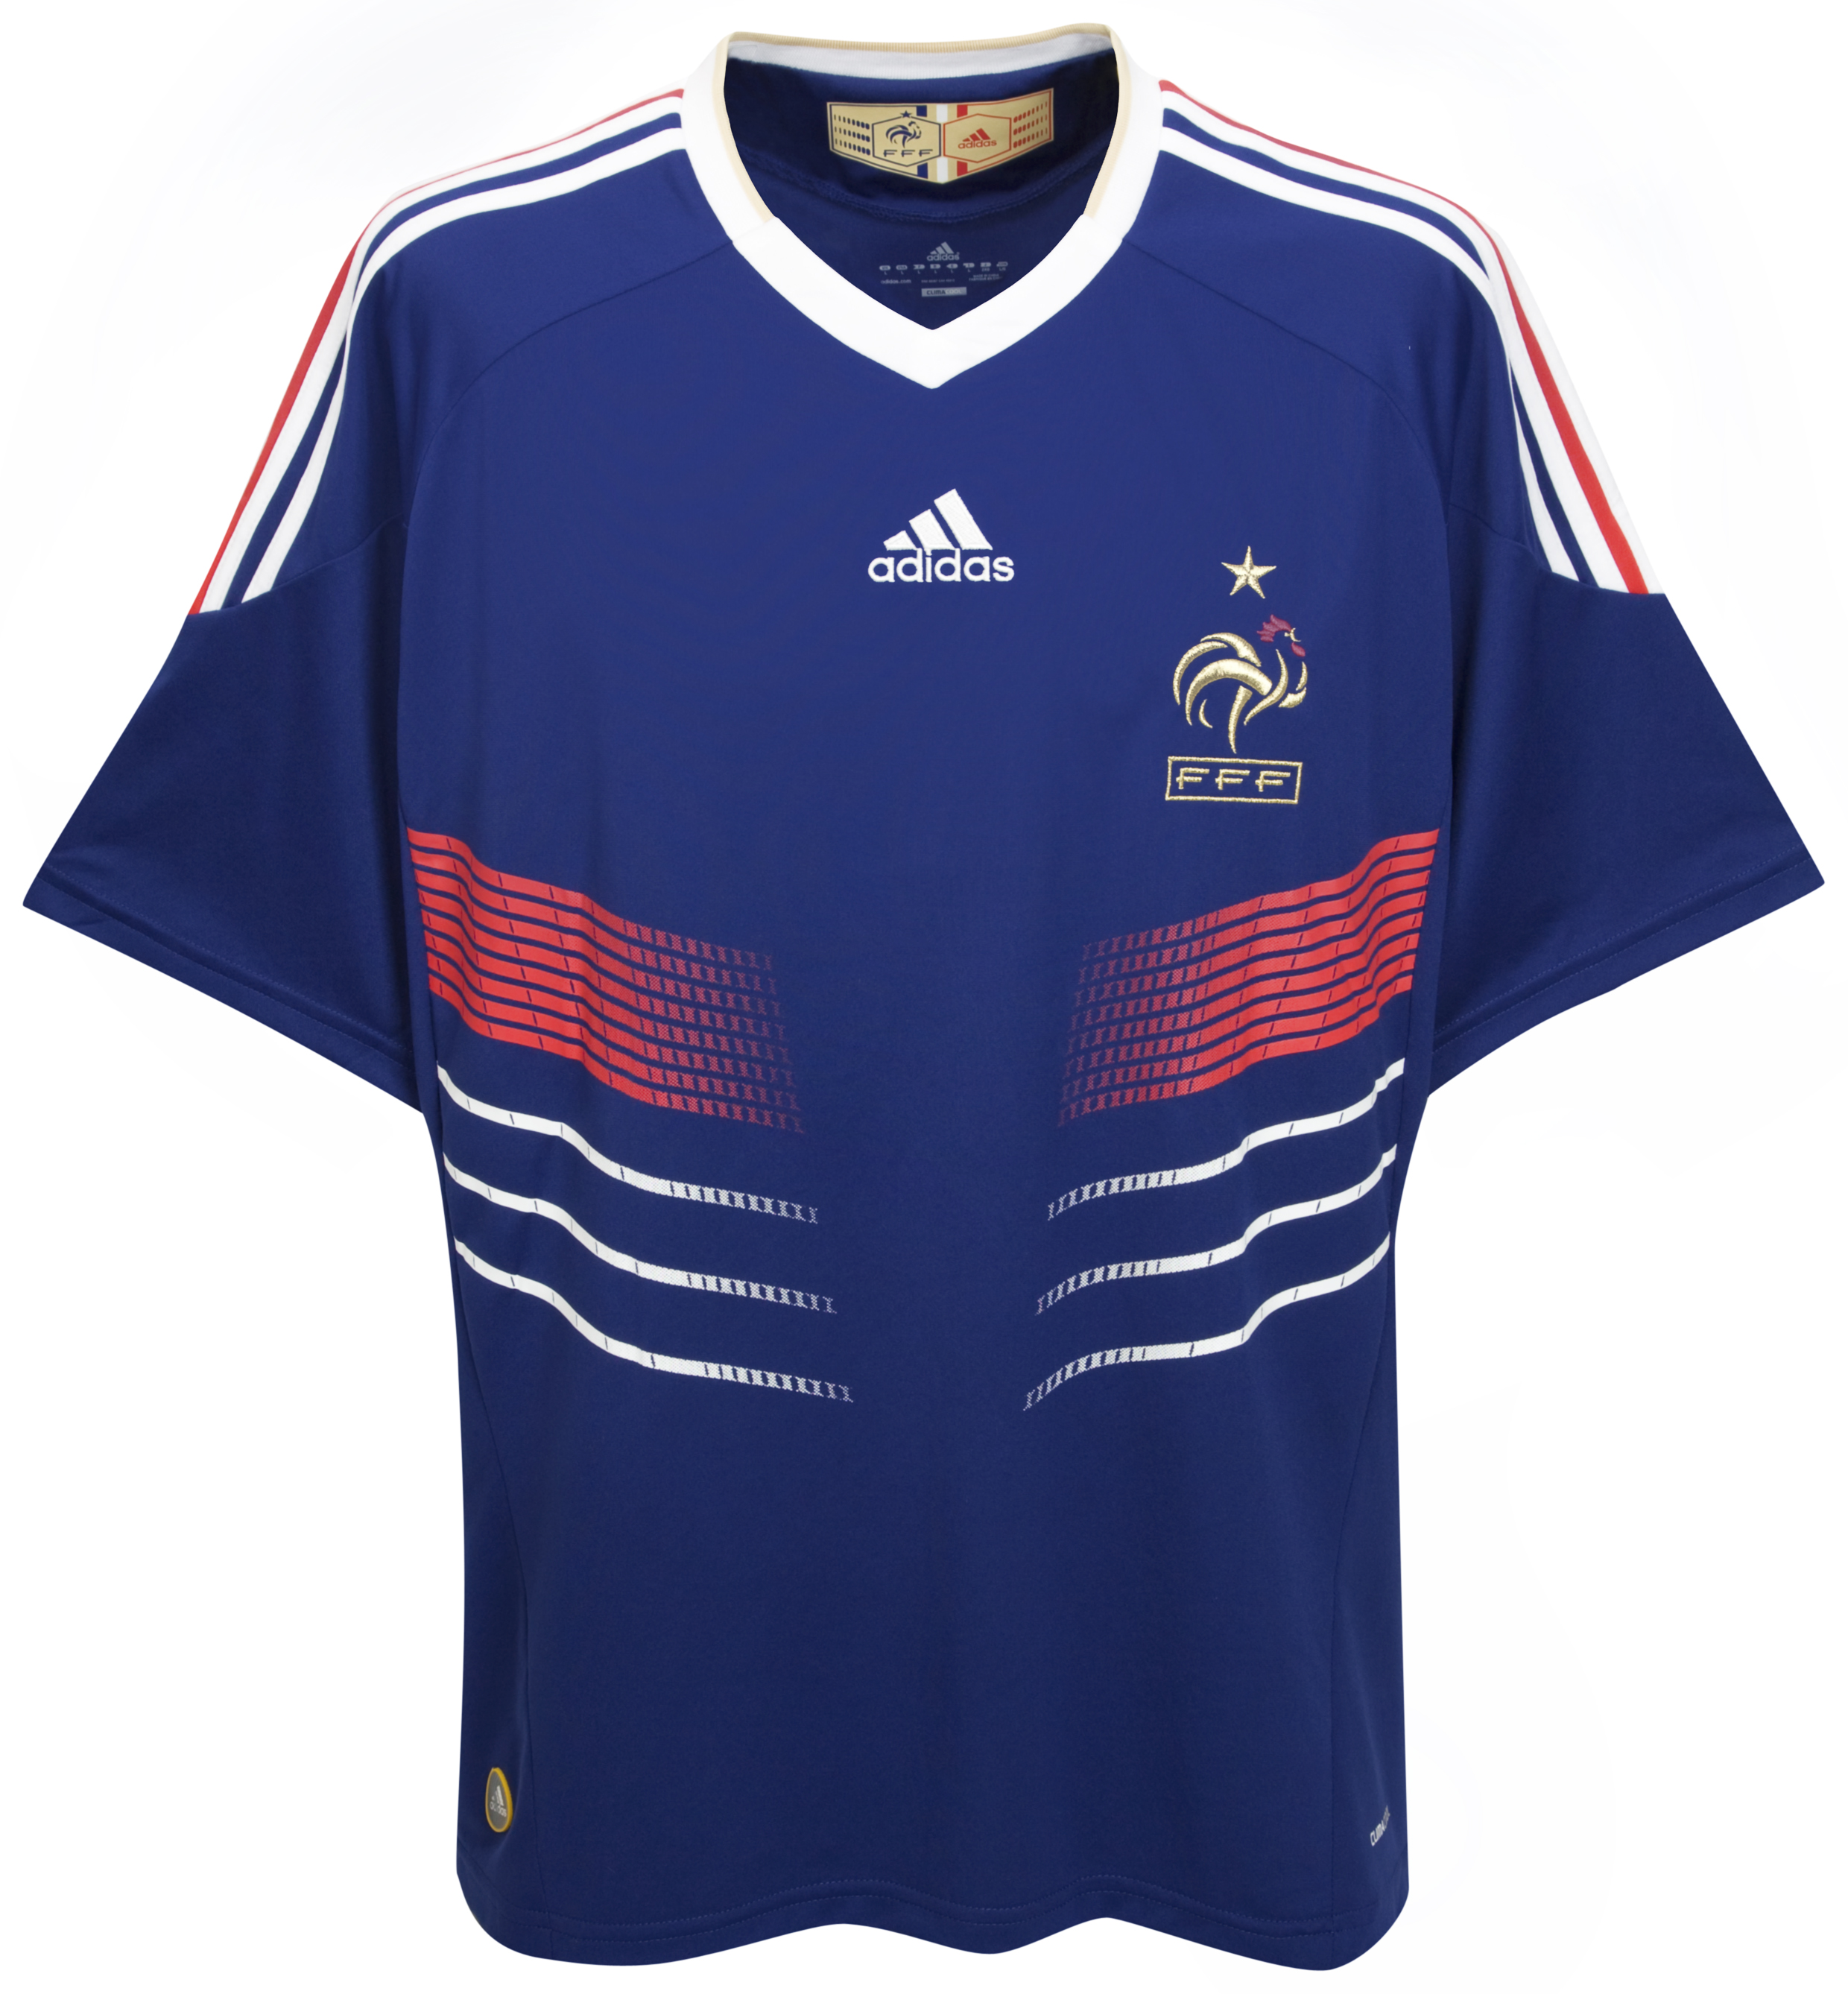 ملابس المنتخبات لكأس العالم2010م Cfc-63740